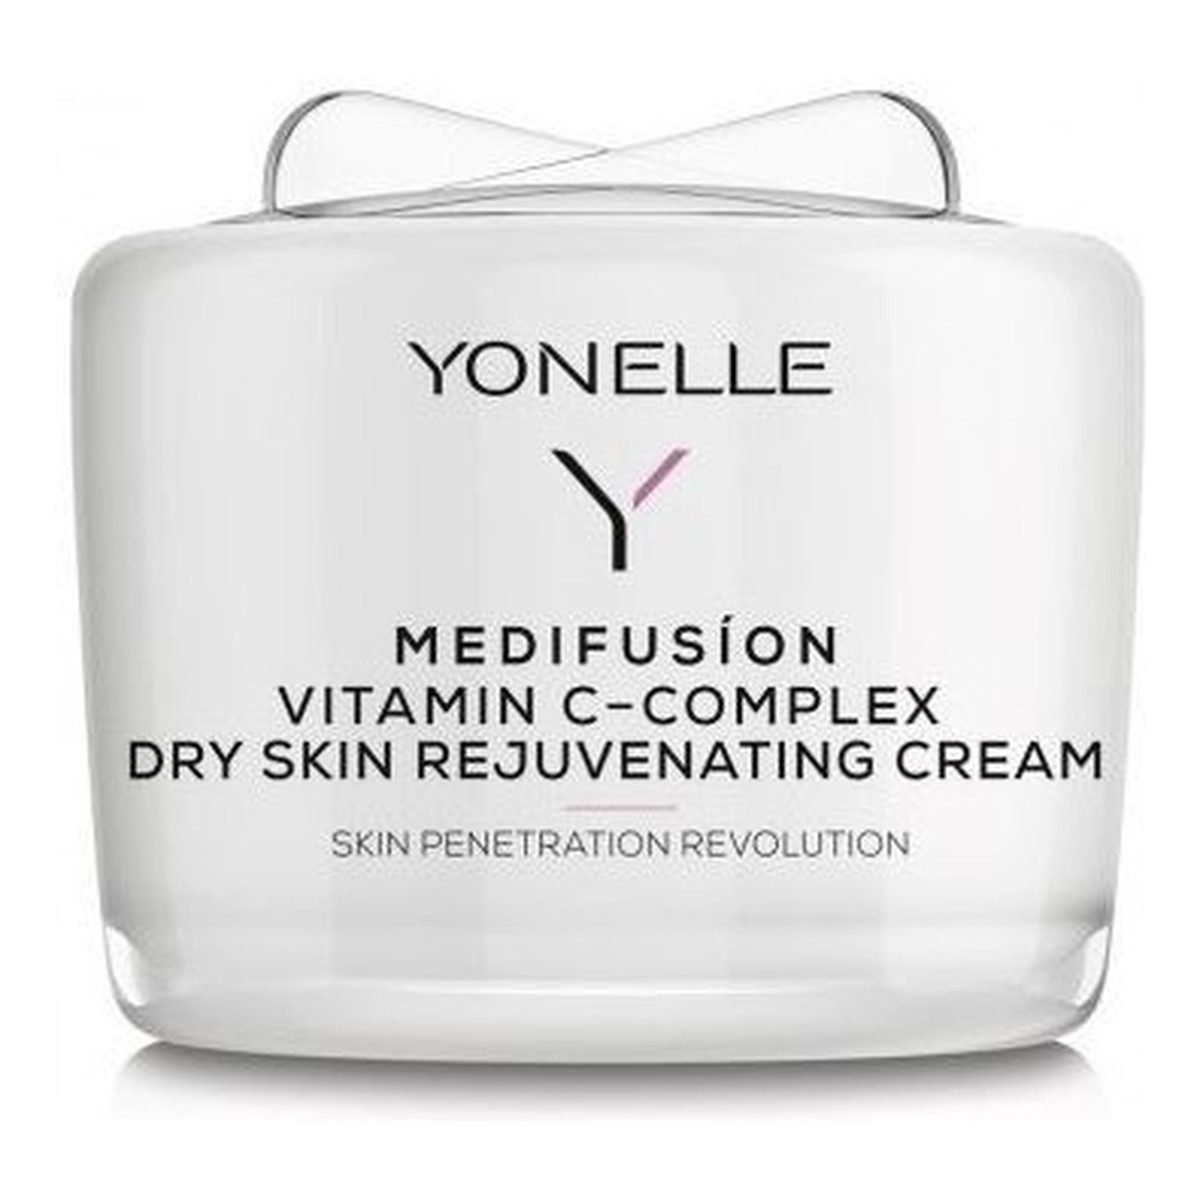 Yonelle Medifusion Vitamin C-Complex Dry Skin Rejuvenating Cream Nawilżający krem na dzień i na noc dedykowany cerze suchej dojrzałej i łuszczącej się 50ml